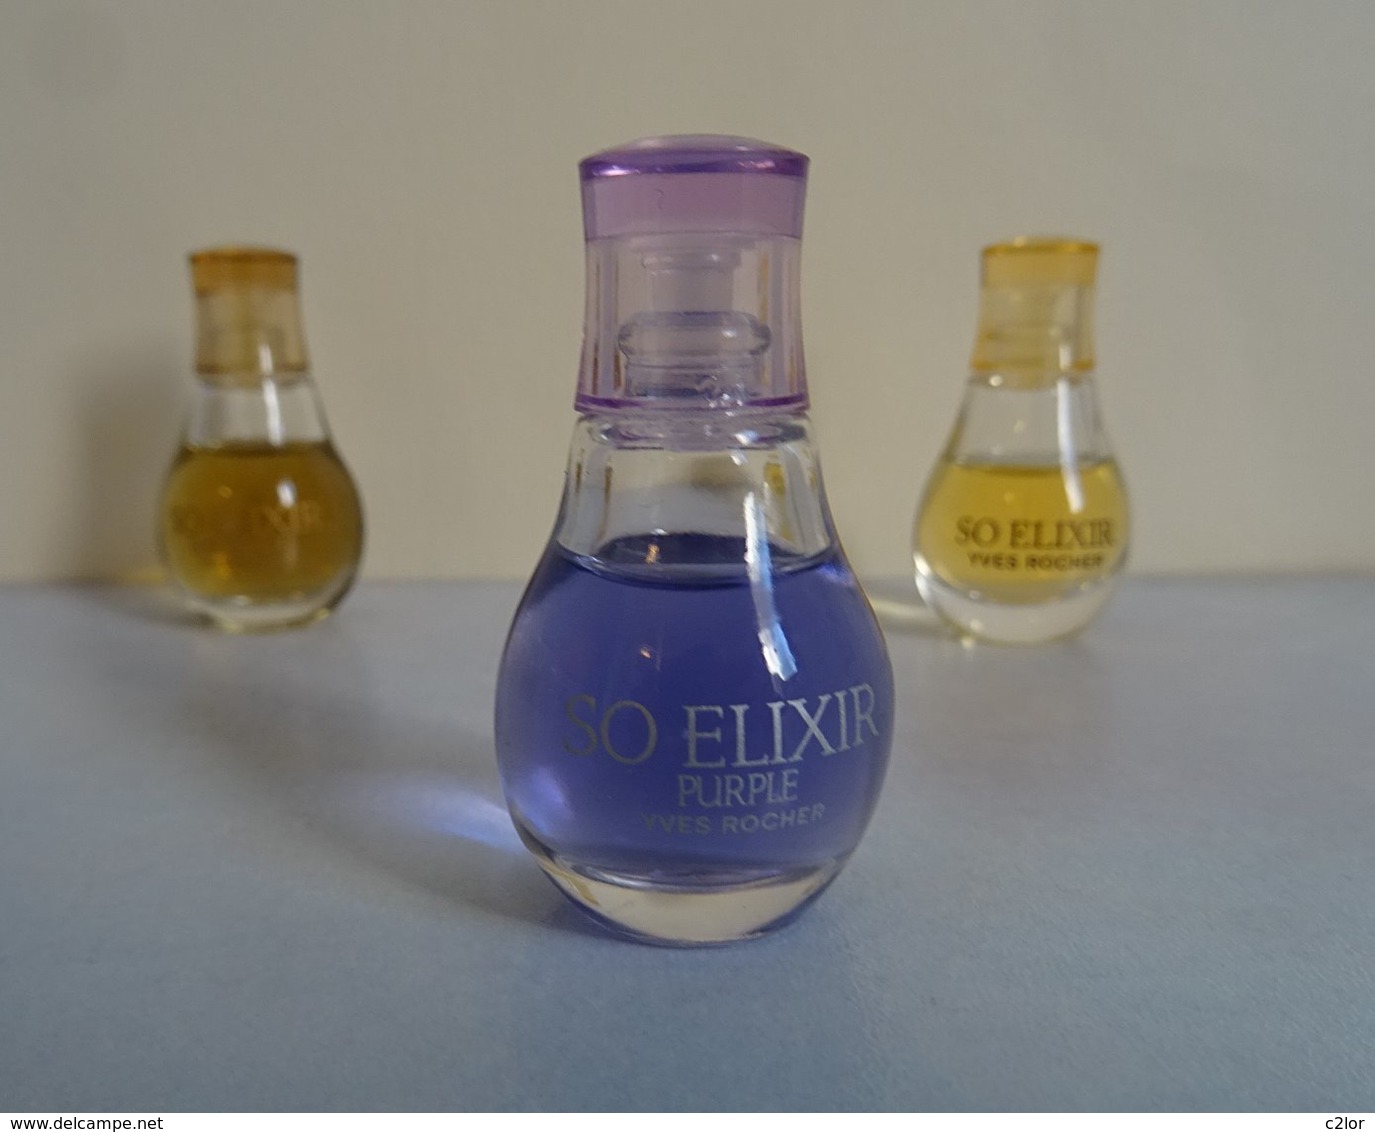 Lot 3  Miniatures Différentes "SO ELIXIR " D' Yves Rocher Sans Boite - Miniatures Womens' Fragrances (without Box)